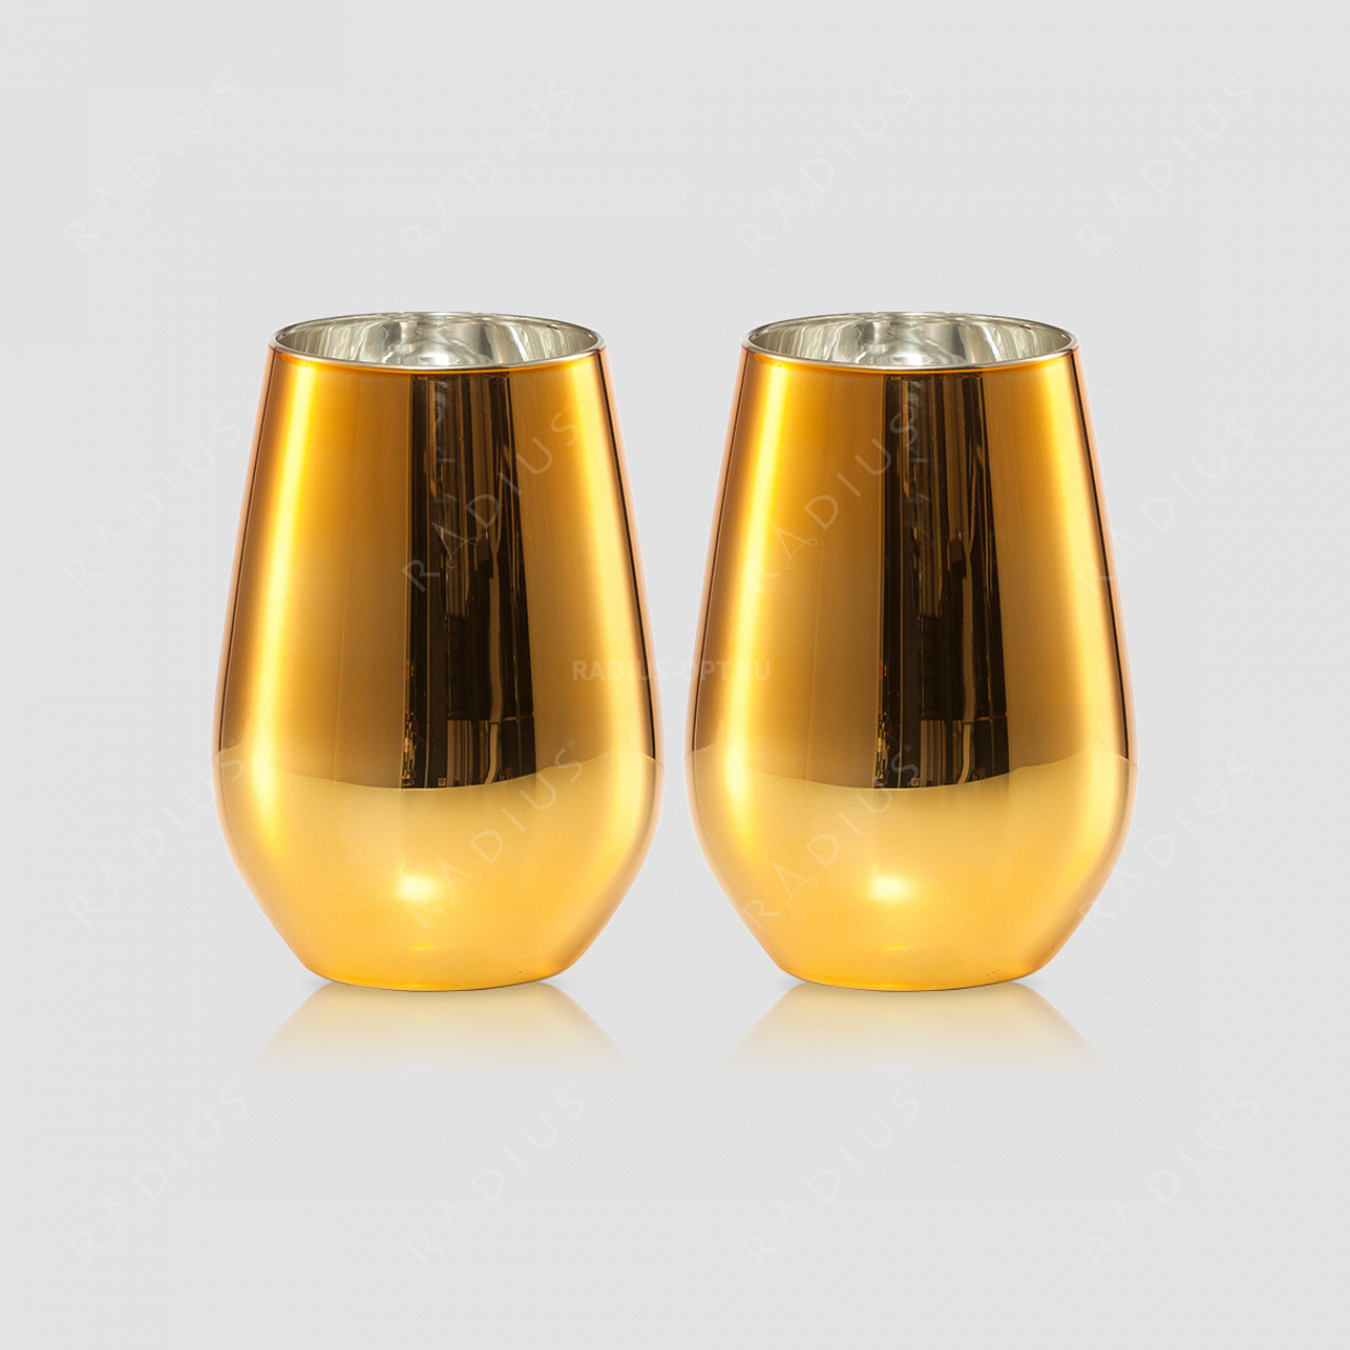 Набор стаканов для воды 397 мл, h 11,4 см, d 8,1 см, цвет золотой, 2 штуки, серия Vina Shine, SCHOTT ZWIESEL, Германия